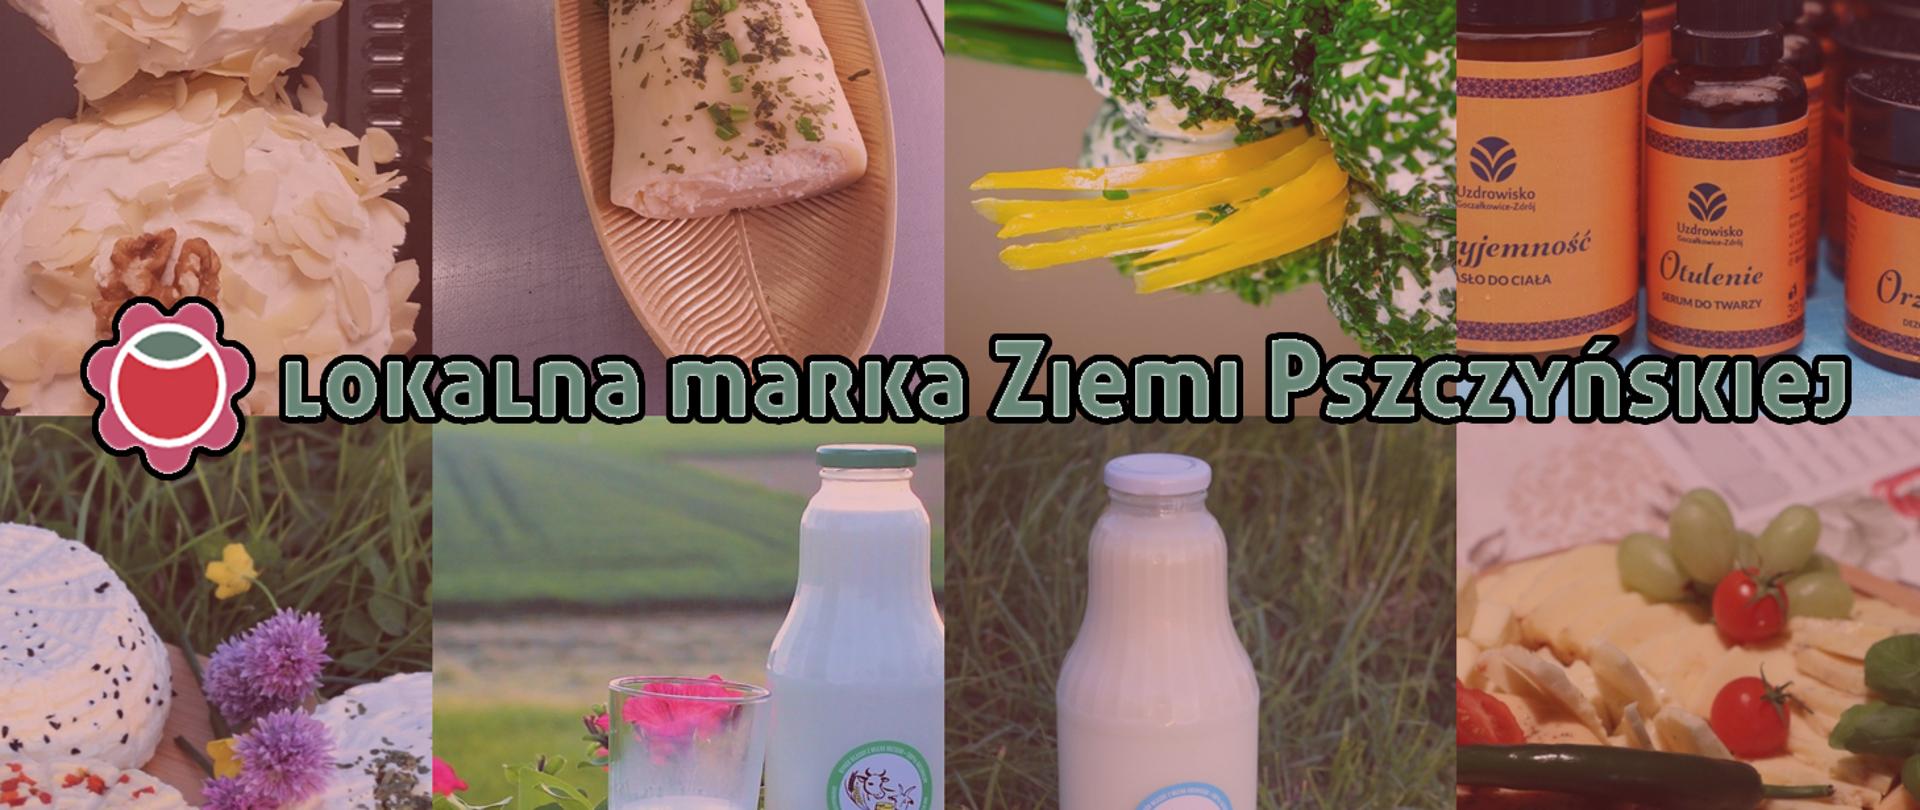 Zielony napis lokalna marka Ziemi Pszczyńskiej, w tle różne artykuły spożywcze